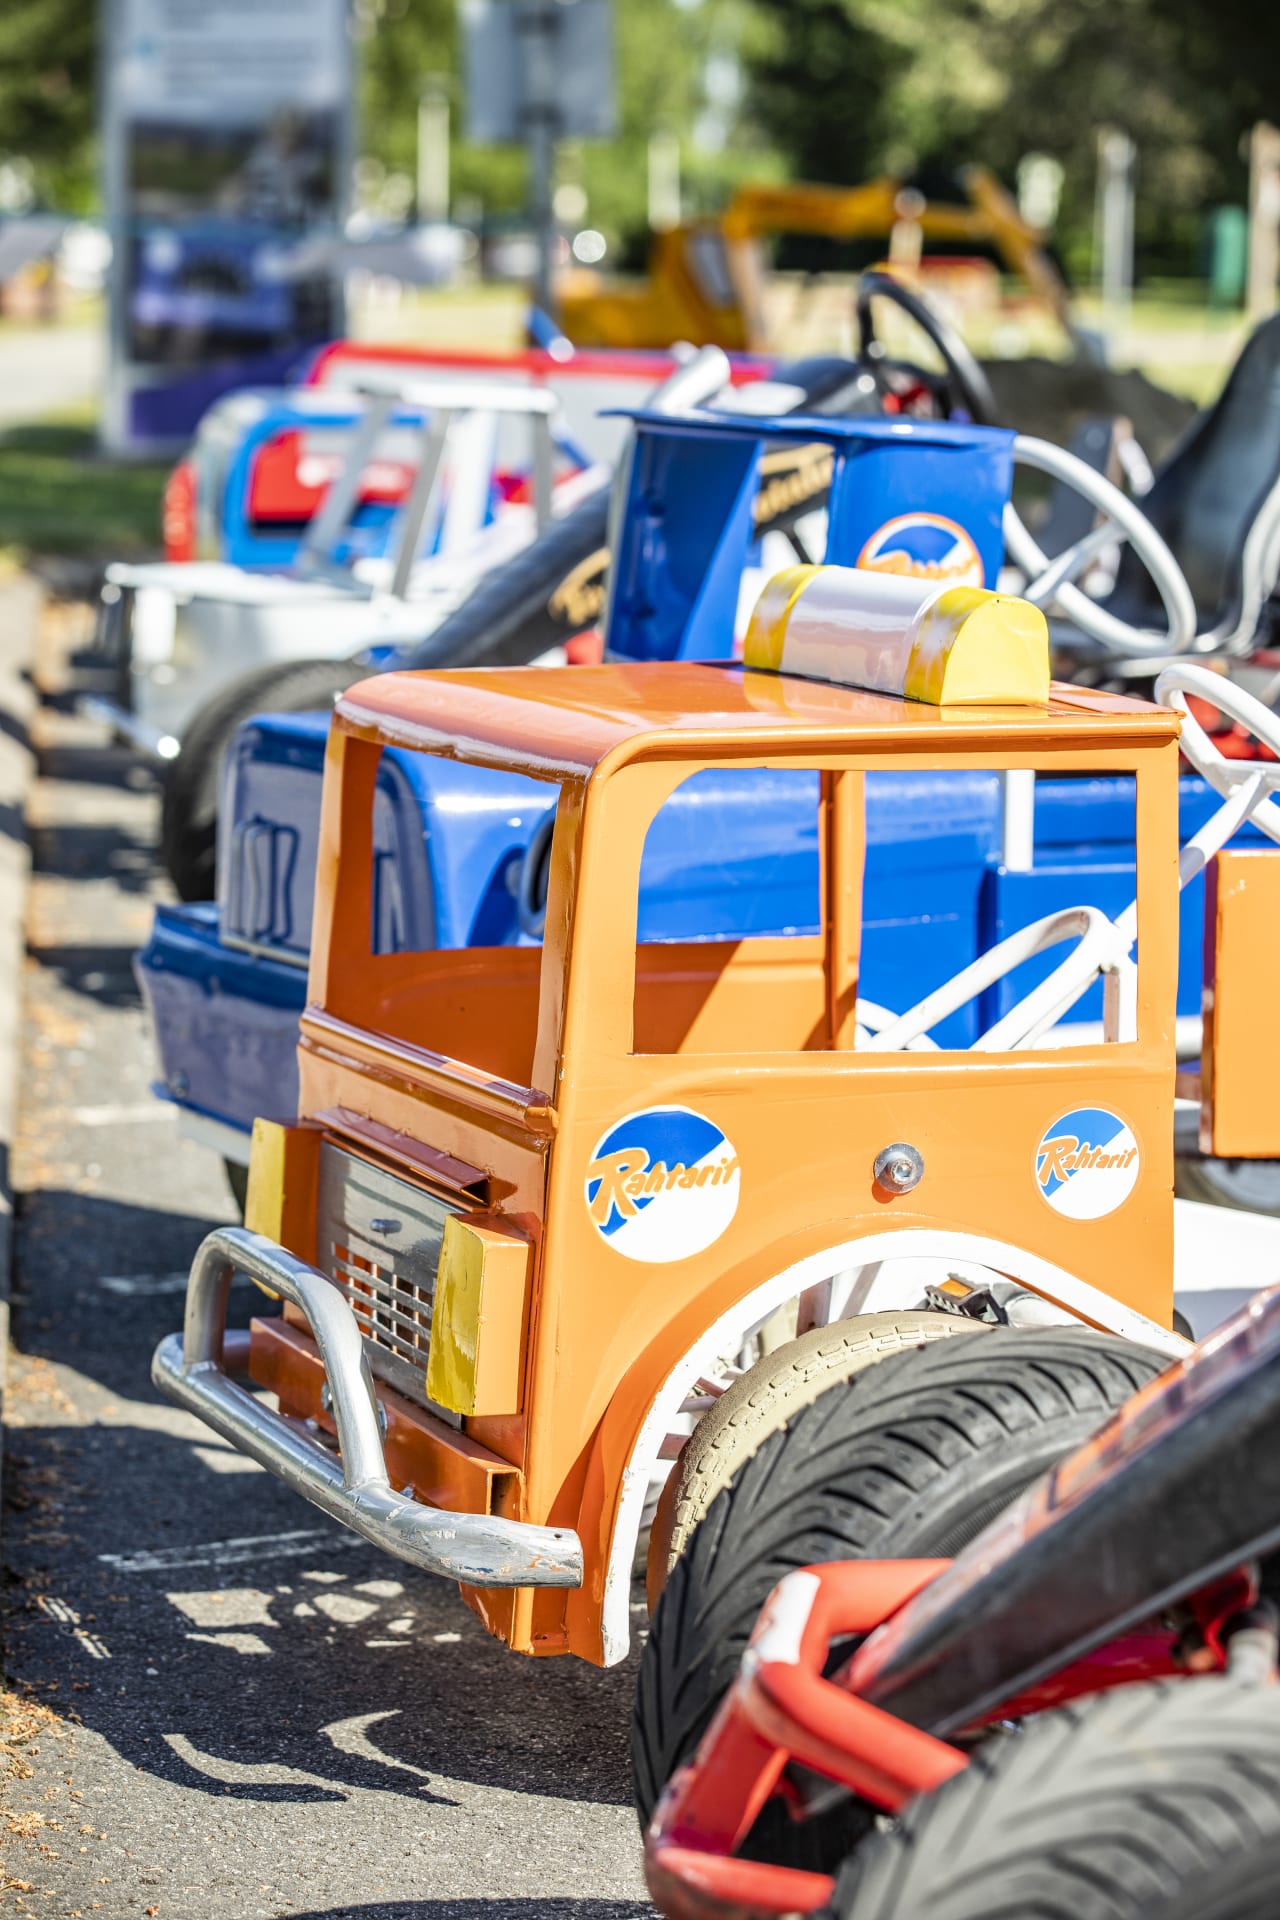 Liikennepuiston polkuautoja parkkirivistössä. Autot ovat erimallisia ja erivärisä, kuvan etualalla oranssi ja sininen polkuauton keula.